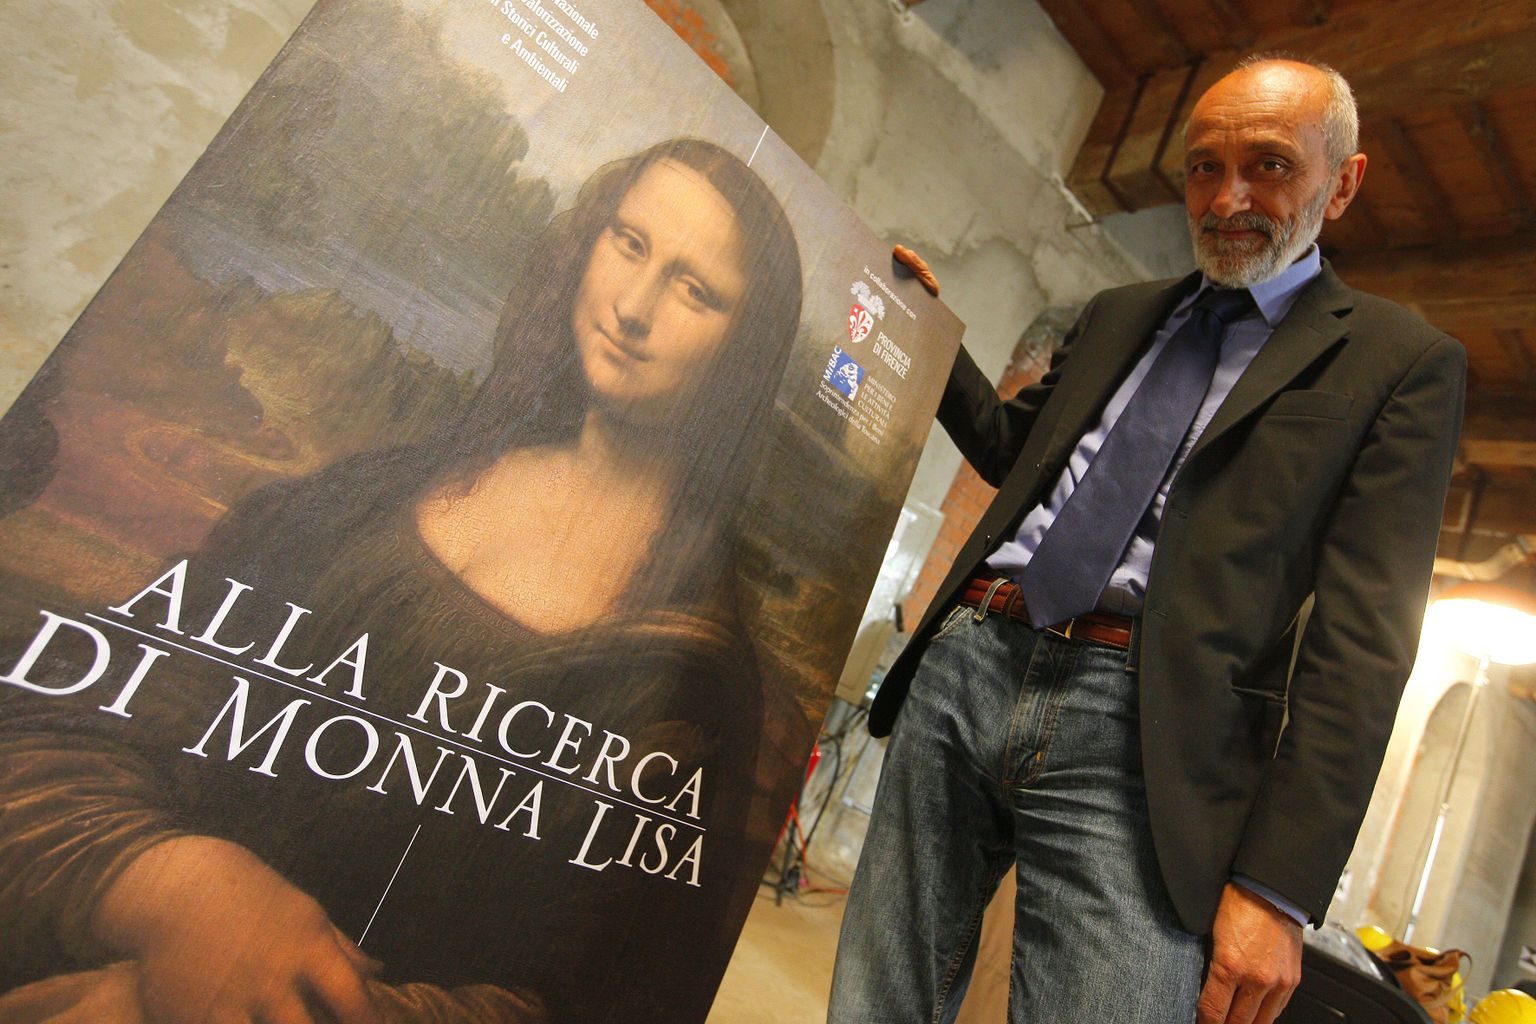 Itaalia kultuuriväärtuste ameti juht Silvano Vinceti näitamas väljakaevamisi reklaamivat plakatit